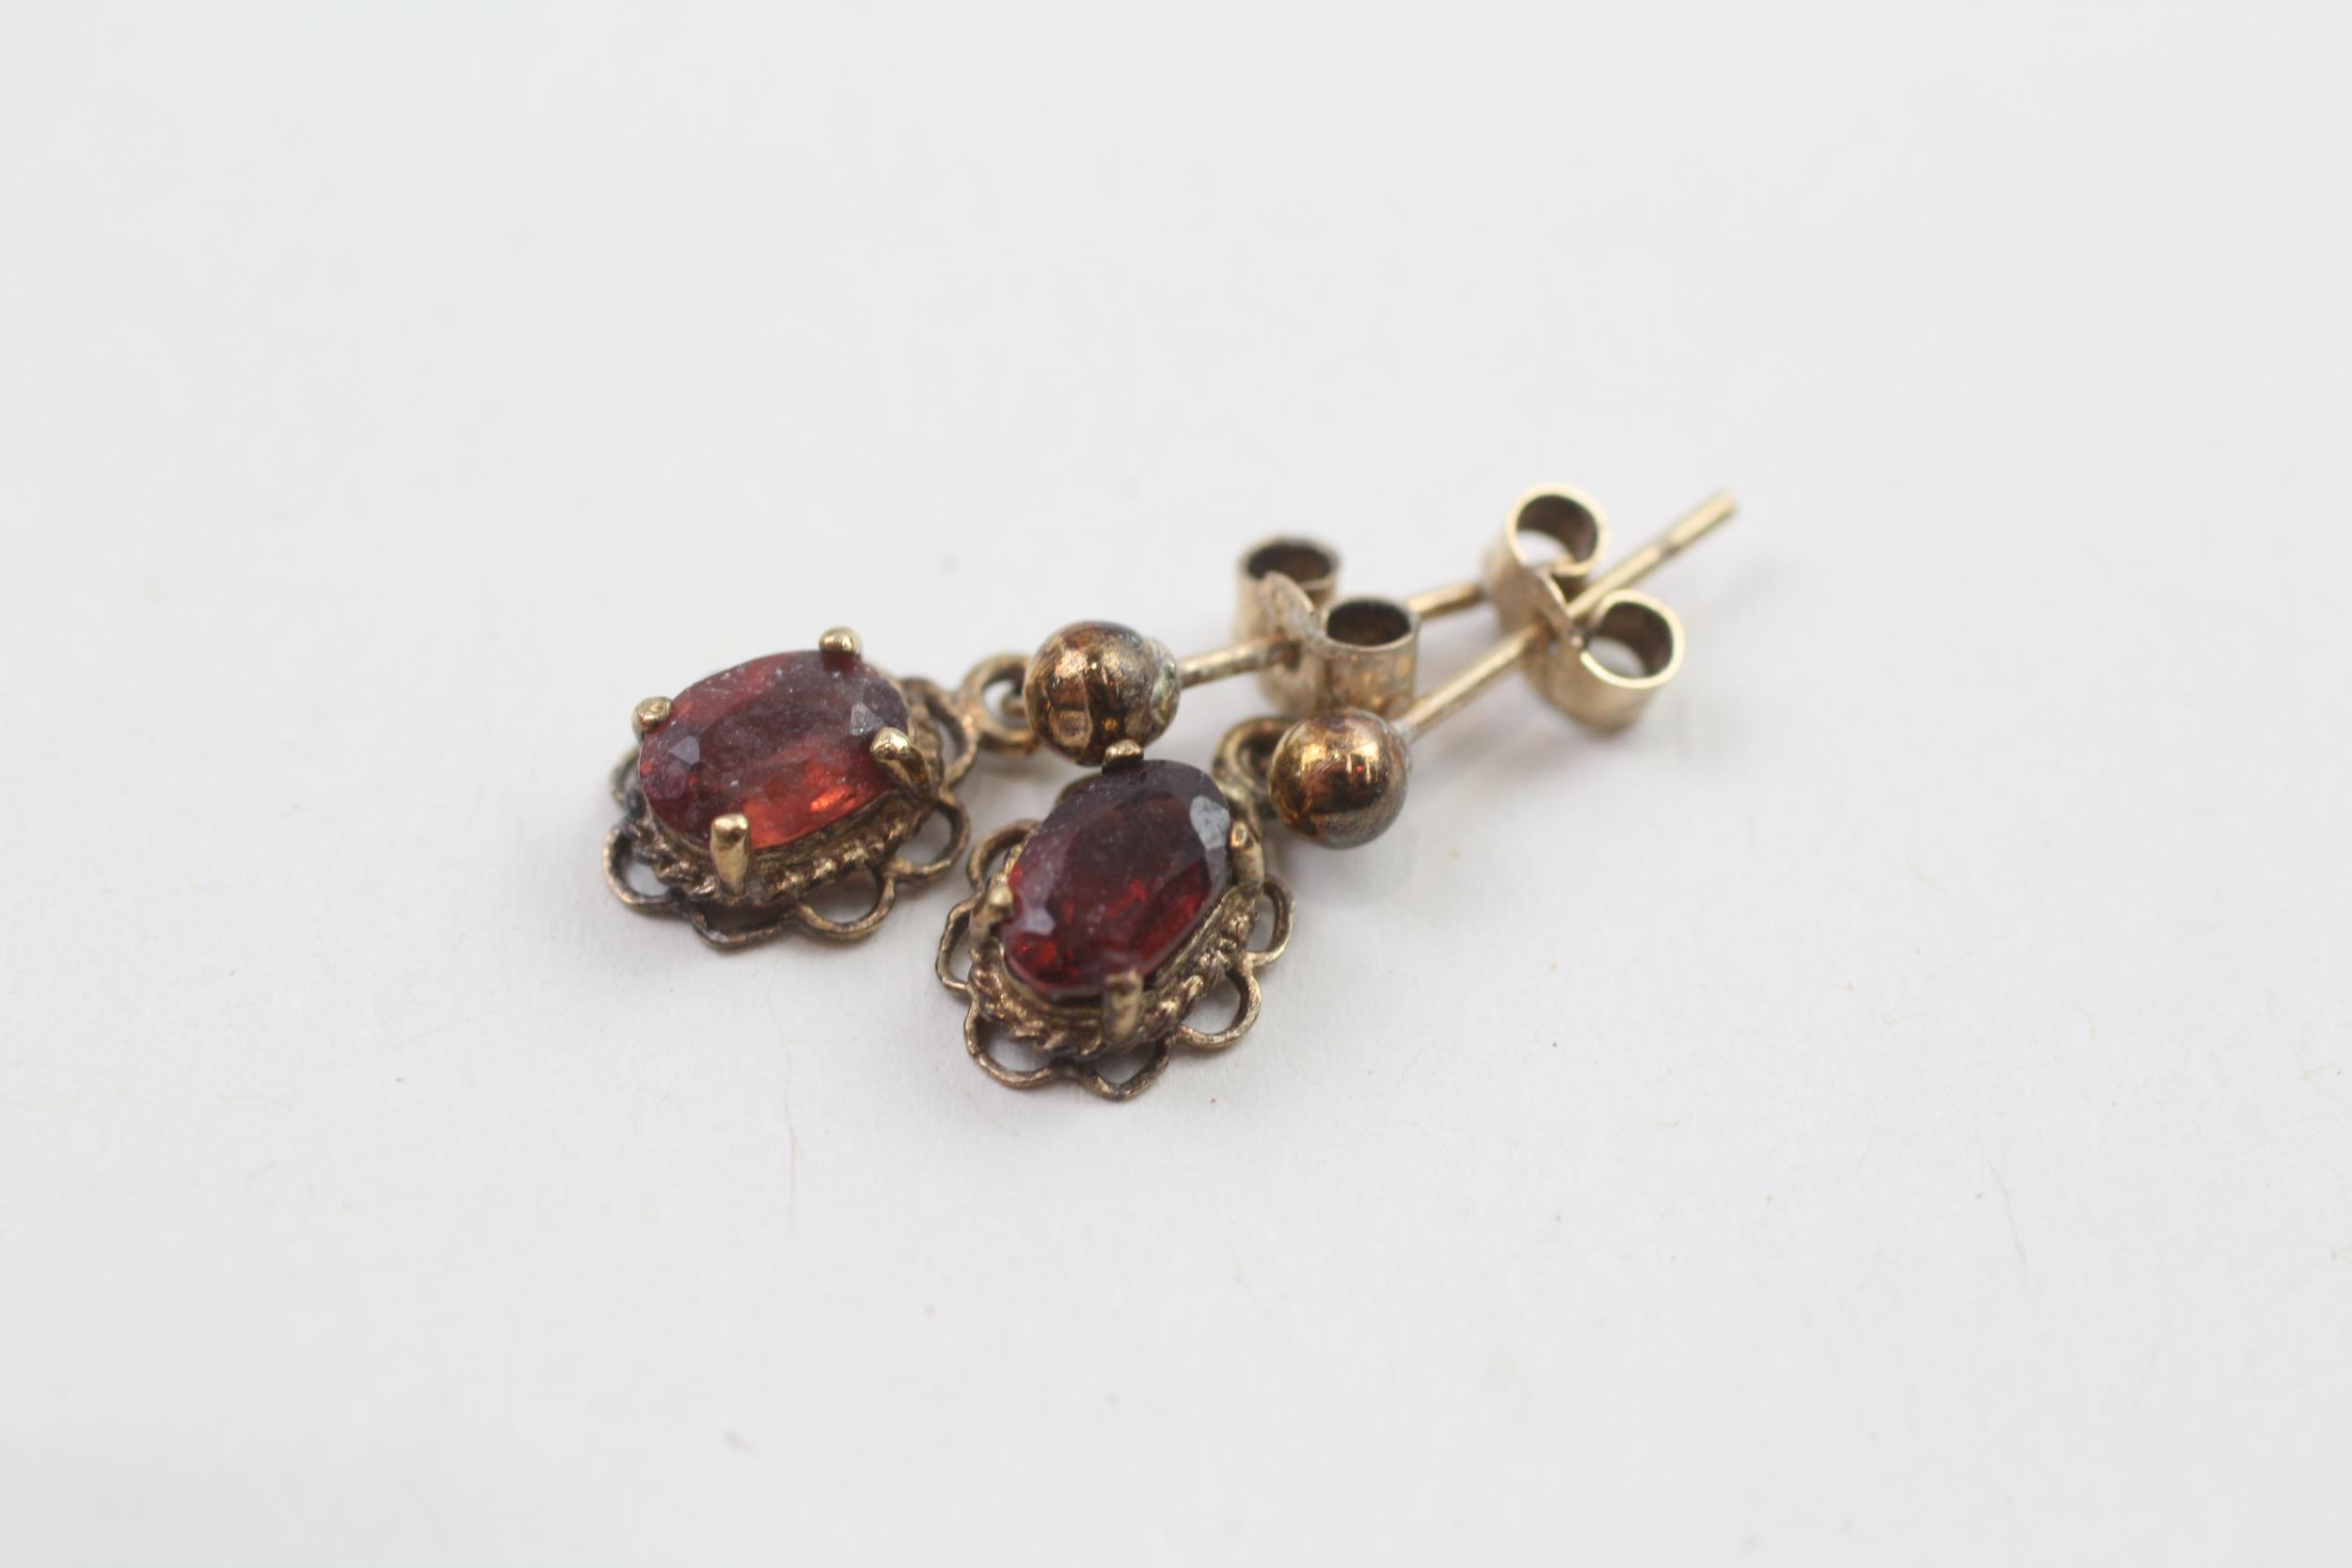 9ct gold oval cut garnet drop earrings (1.1g) - Image 2 of 4